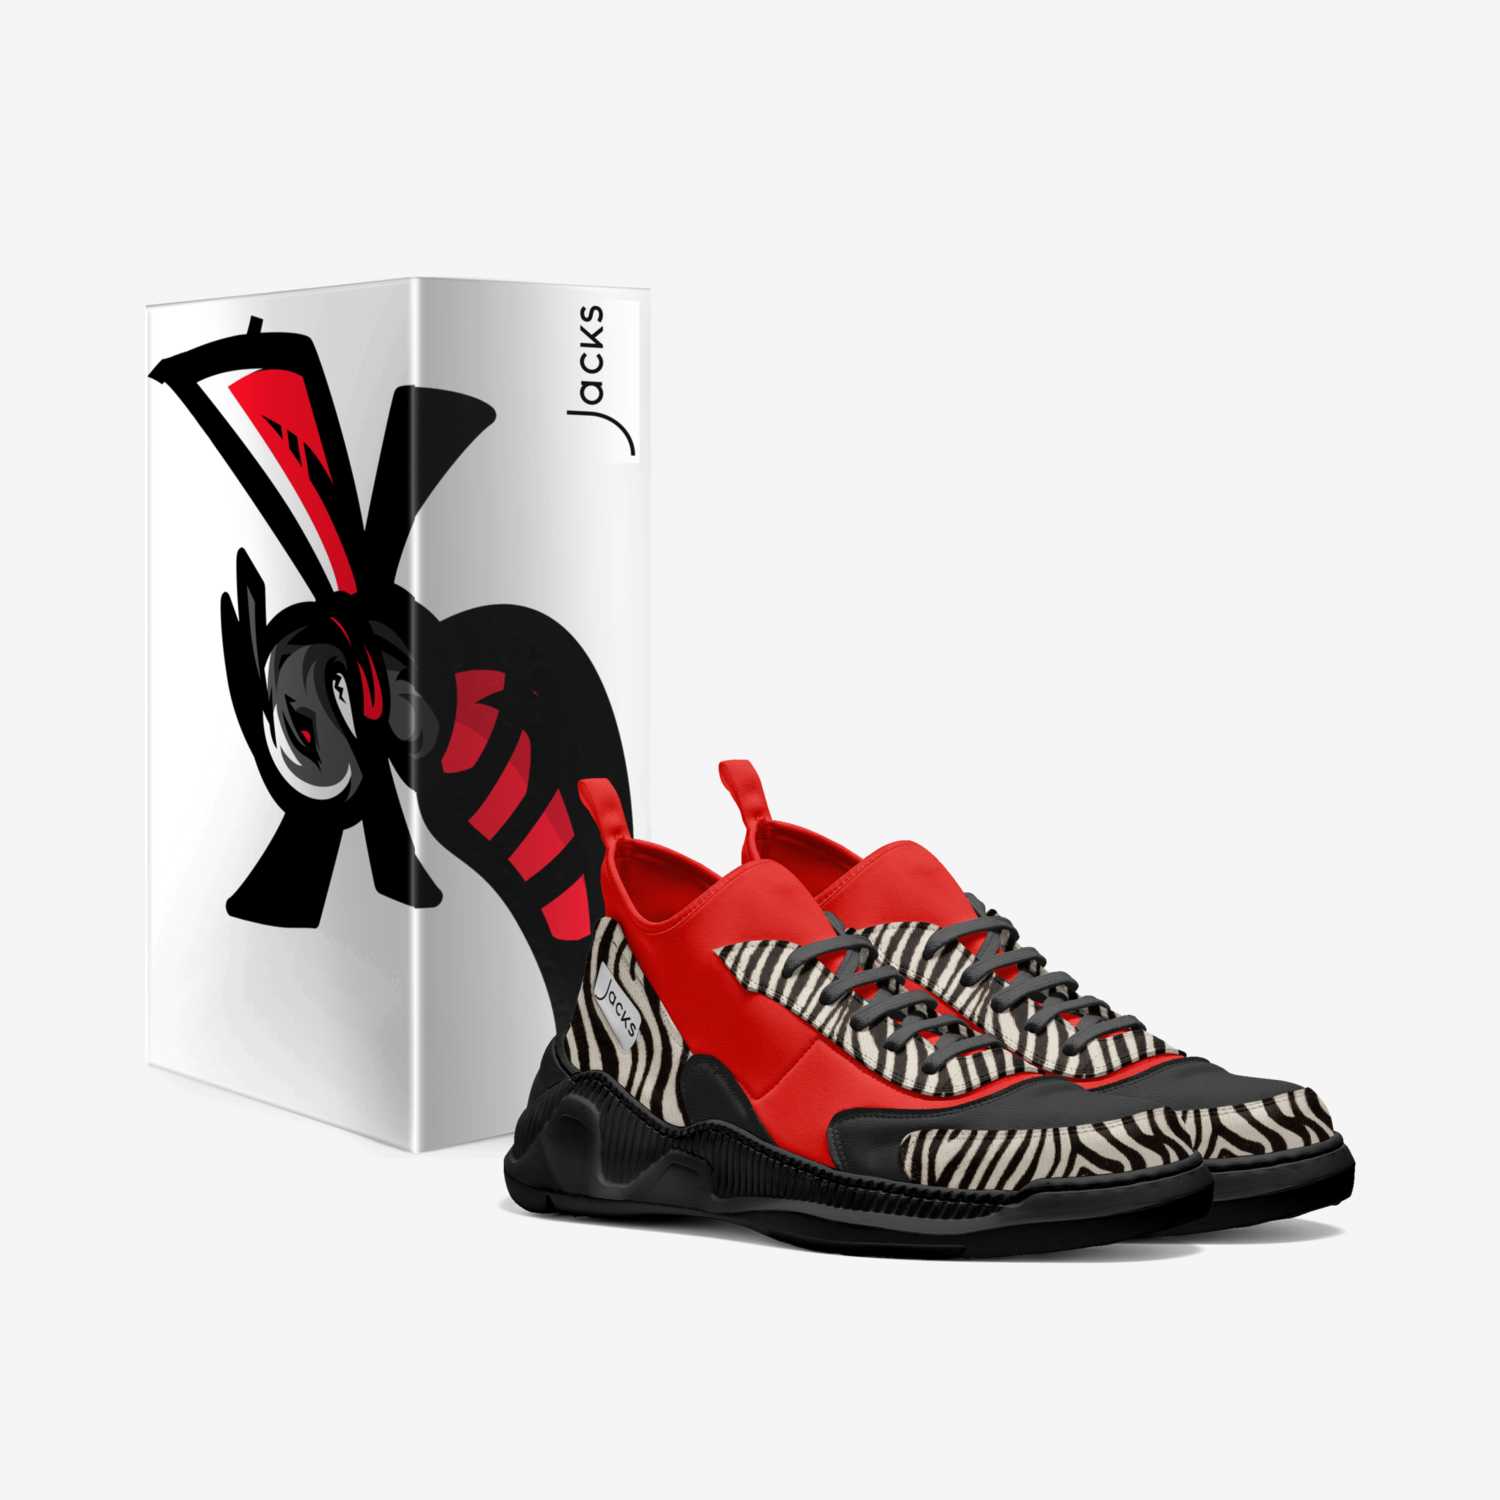 Reaper Neo custom made in Italy shoes by Marvin Ricks Latoya Jackson | Box view